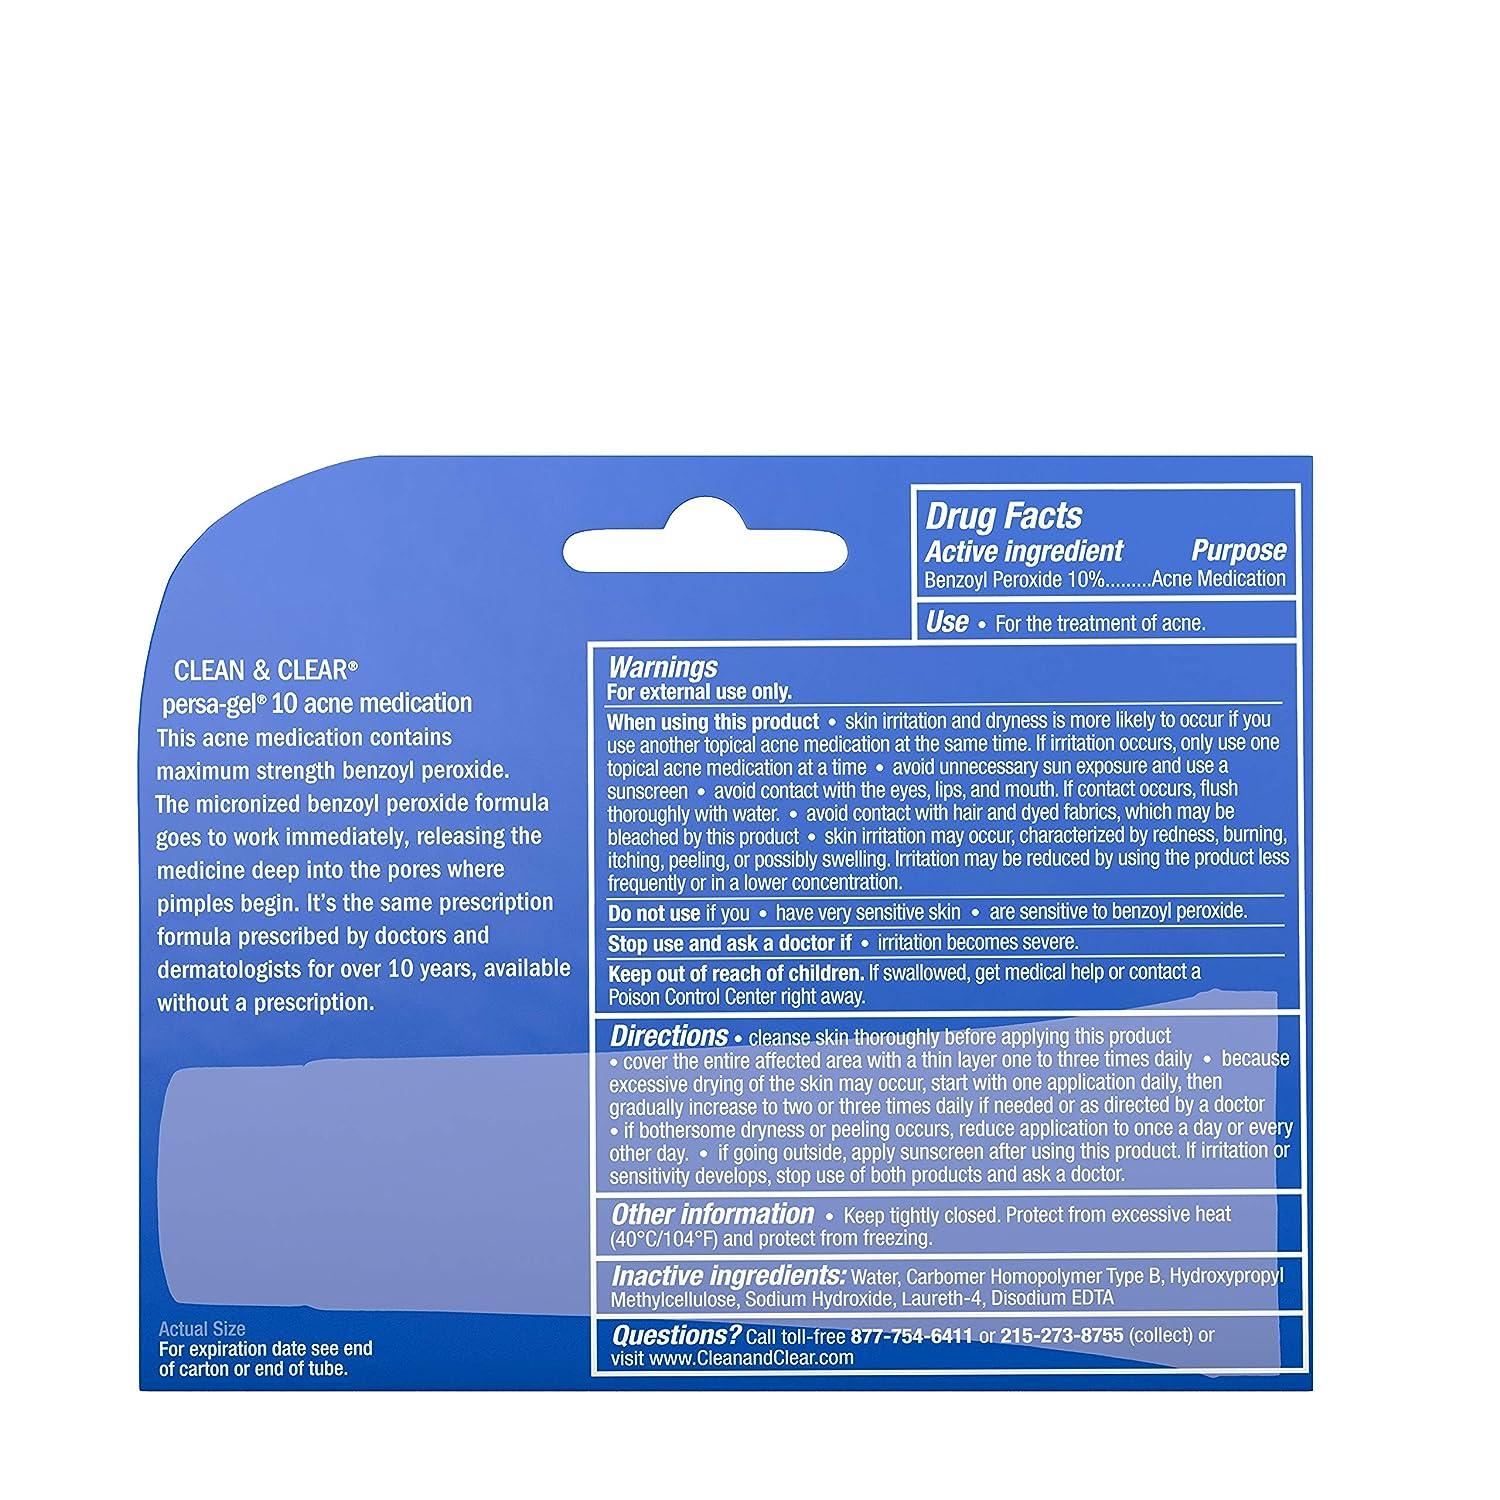 Clean & Clear Persa-Gel 10 | Traitement de l'Acné Peroxyde de Benzoyle à 10% - mondialpharma.com